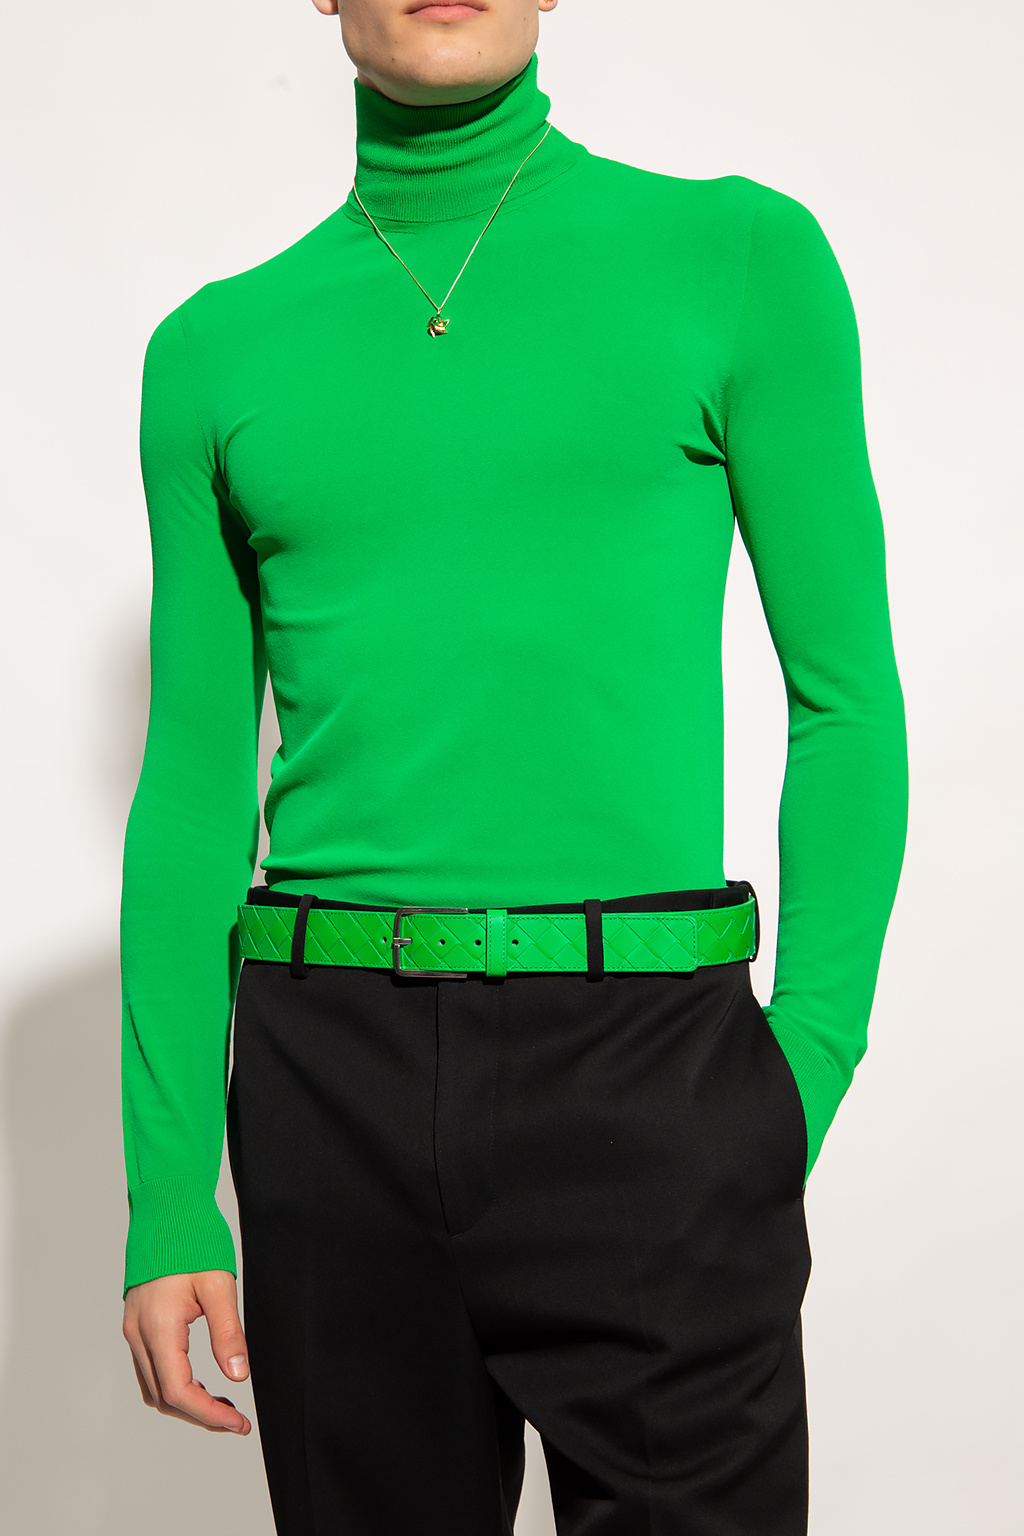 bottega varenne Veneta Long-sleeved turtleneck sweater